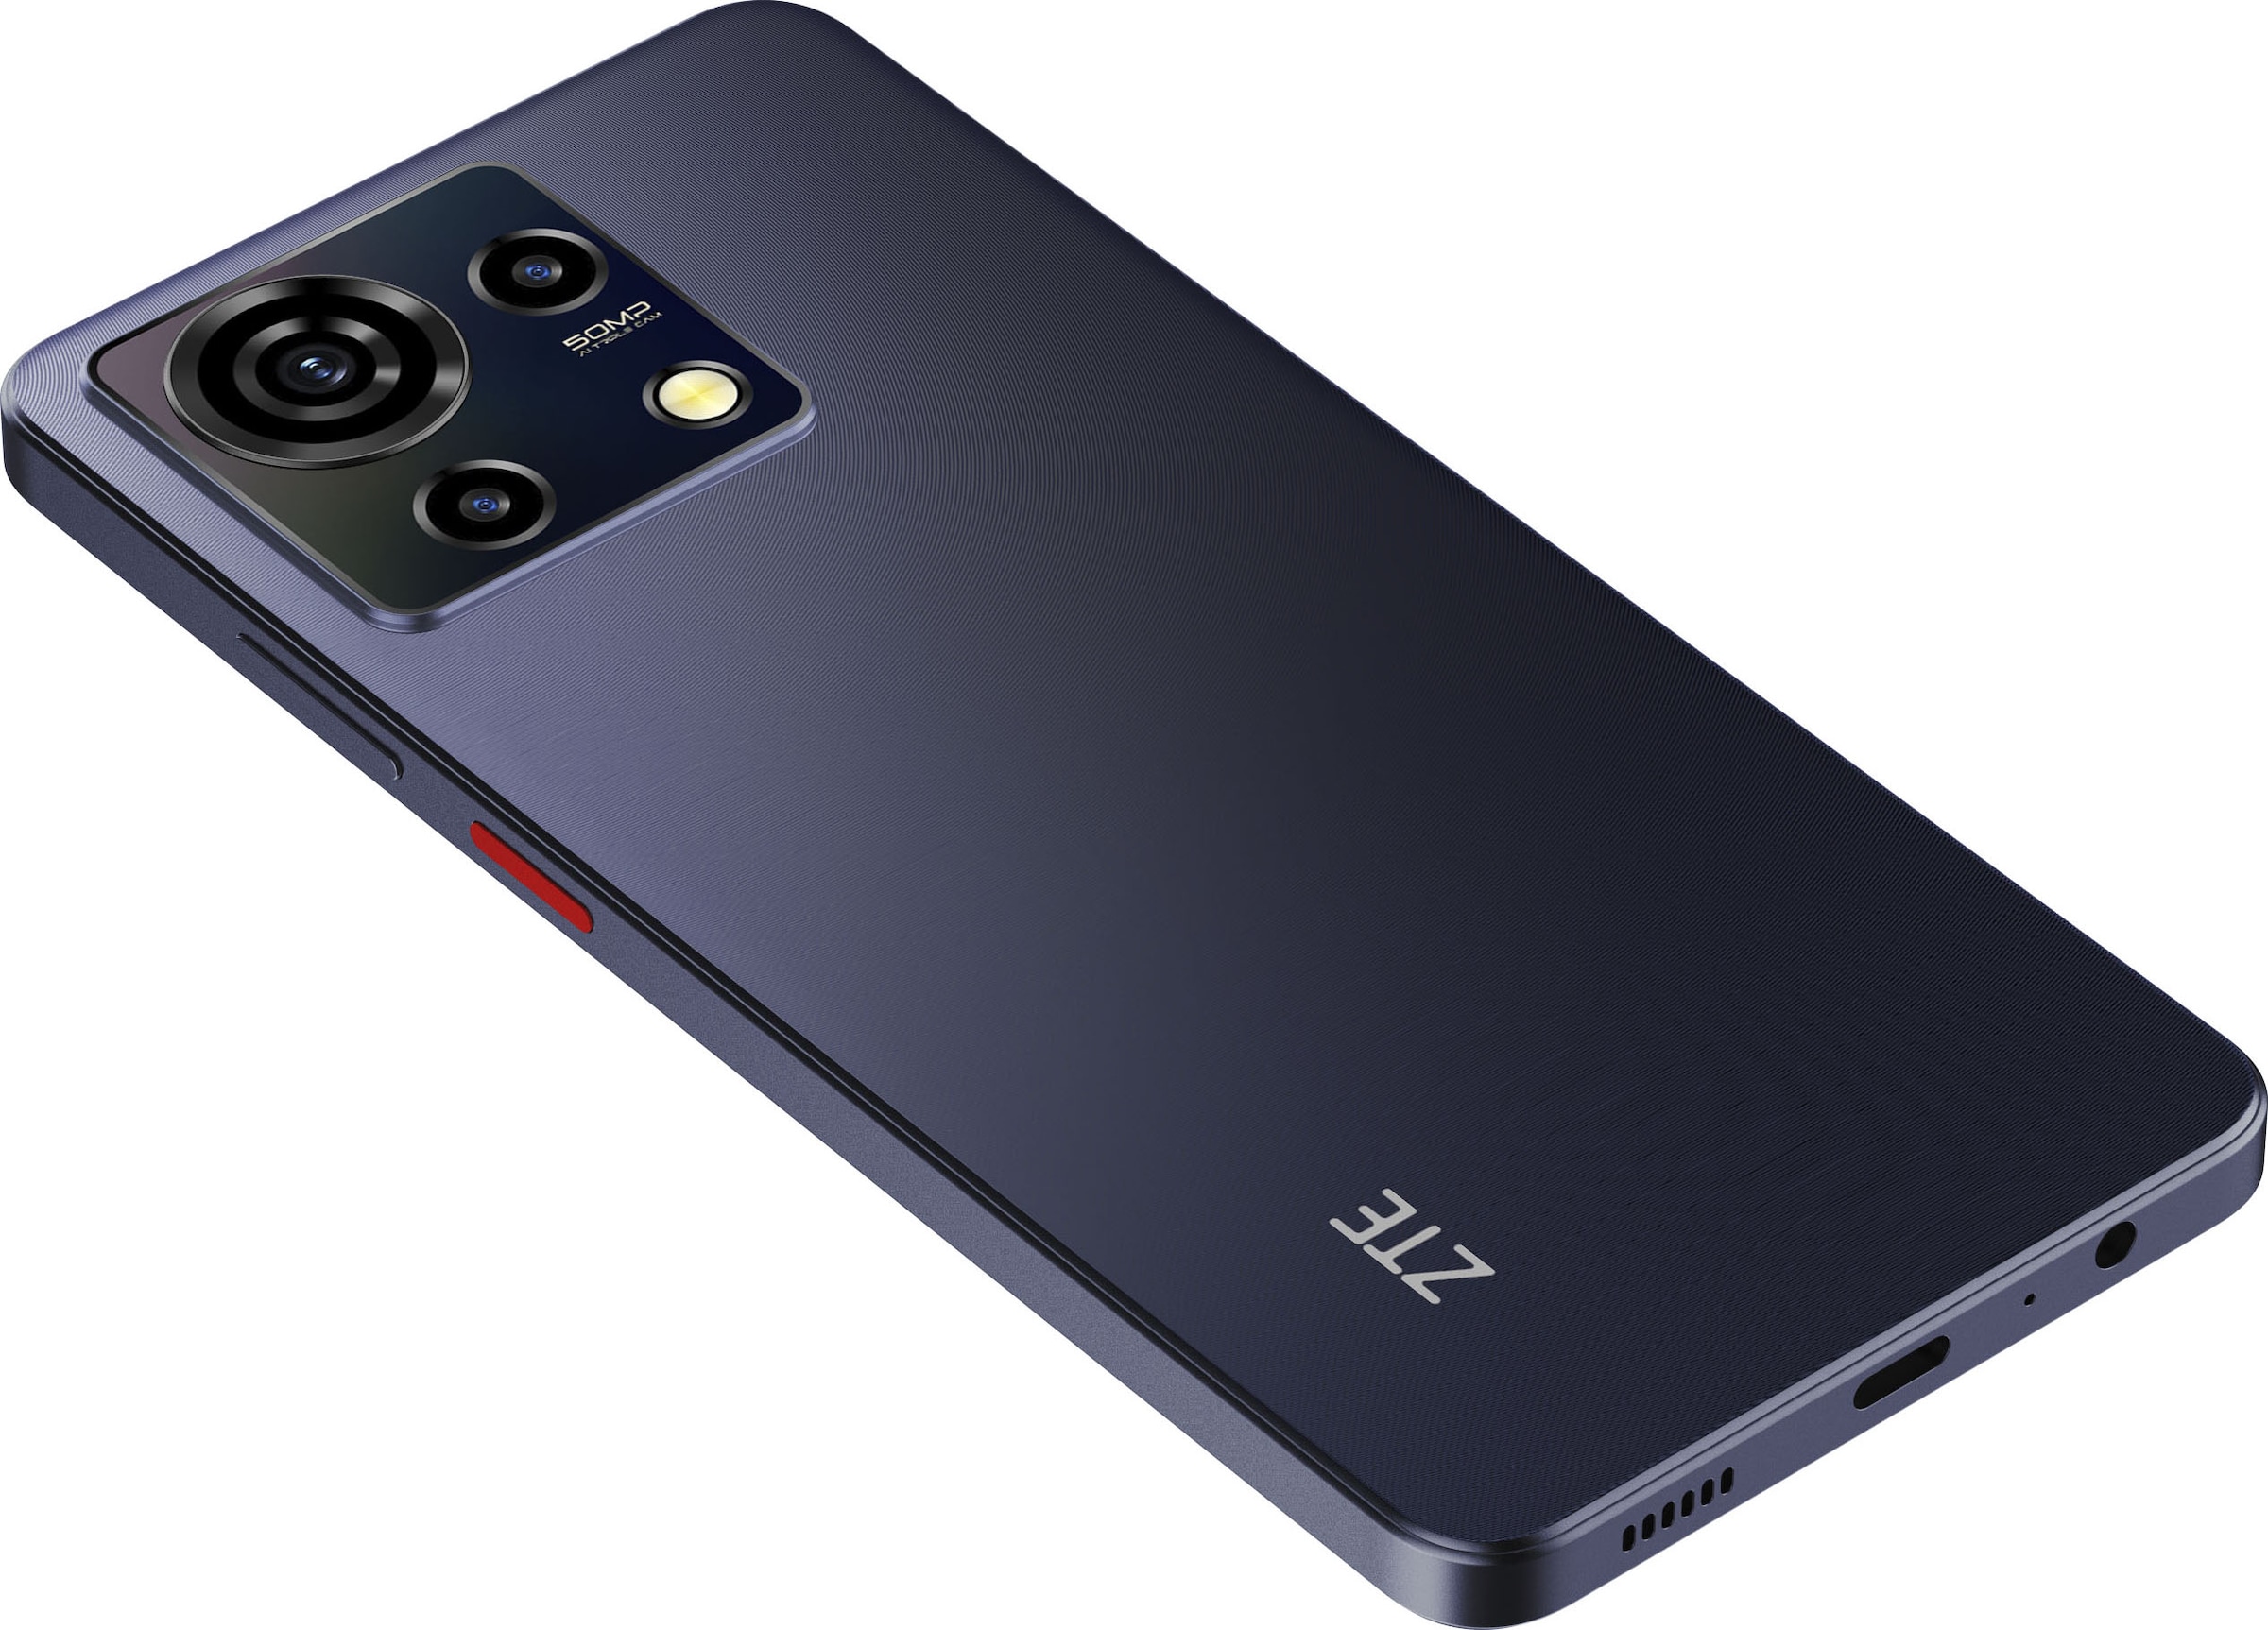 ZTE Smartphone »Blade V50 Vita«, Misty Black, 17,14 cm/6,75 Zoll, 256 GB  Speicherplatz, 50 MP Kamera jetzt online bei OTTO